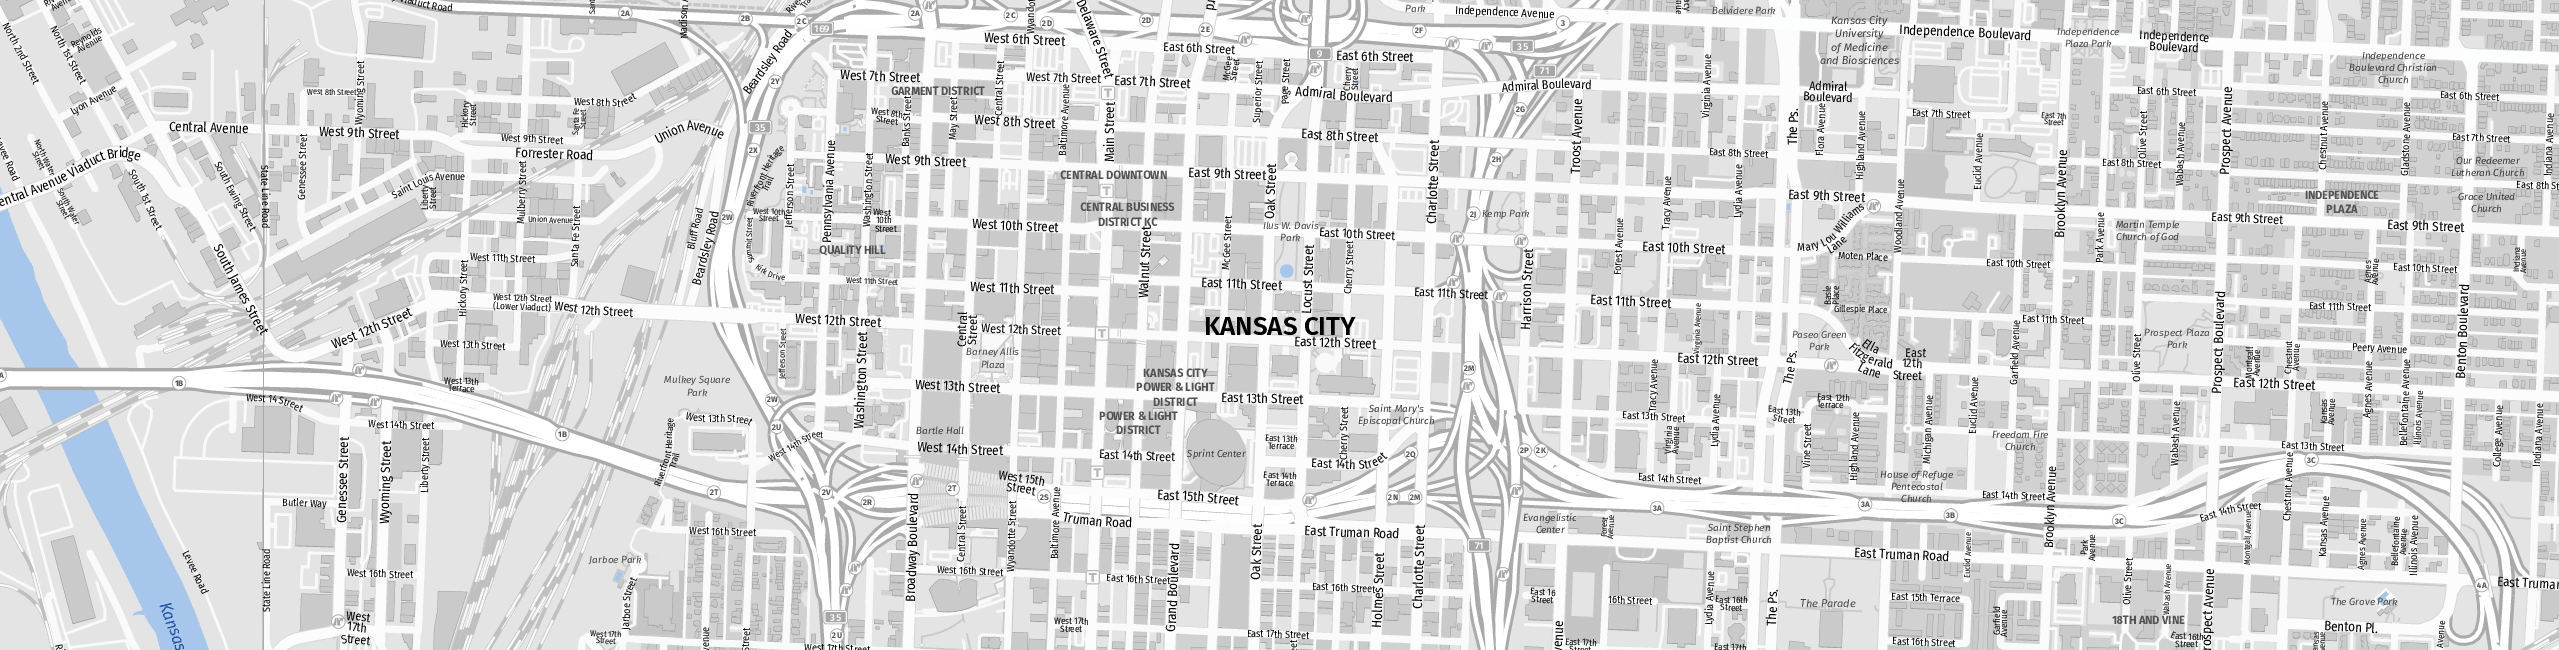 Stadtplan Kansas City zum Downloaden.